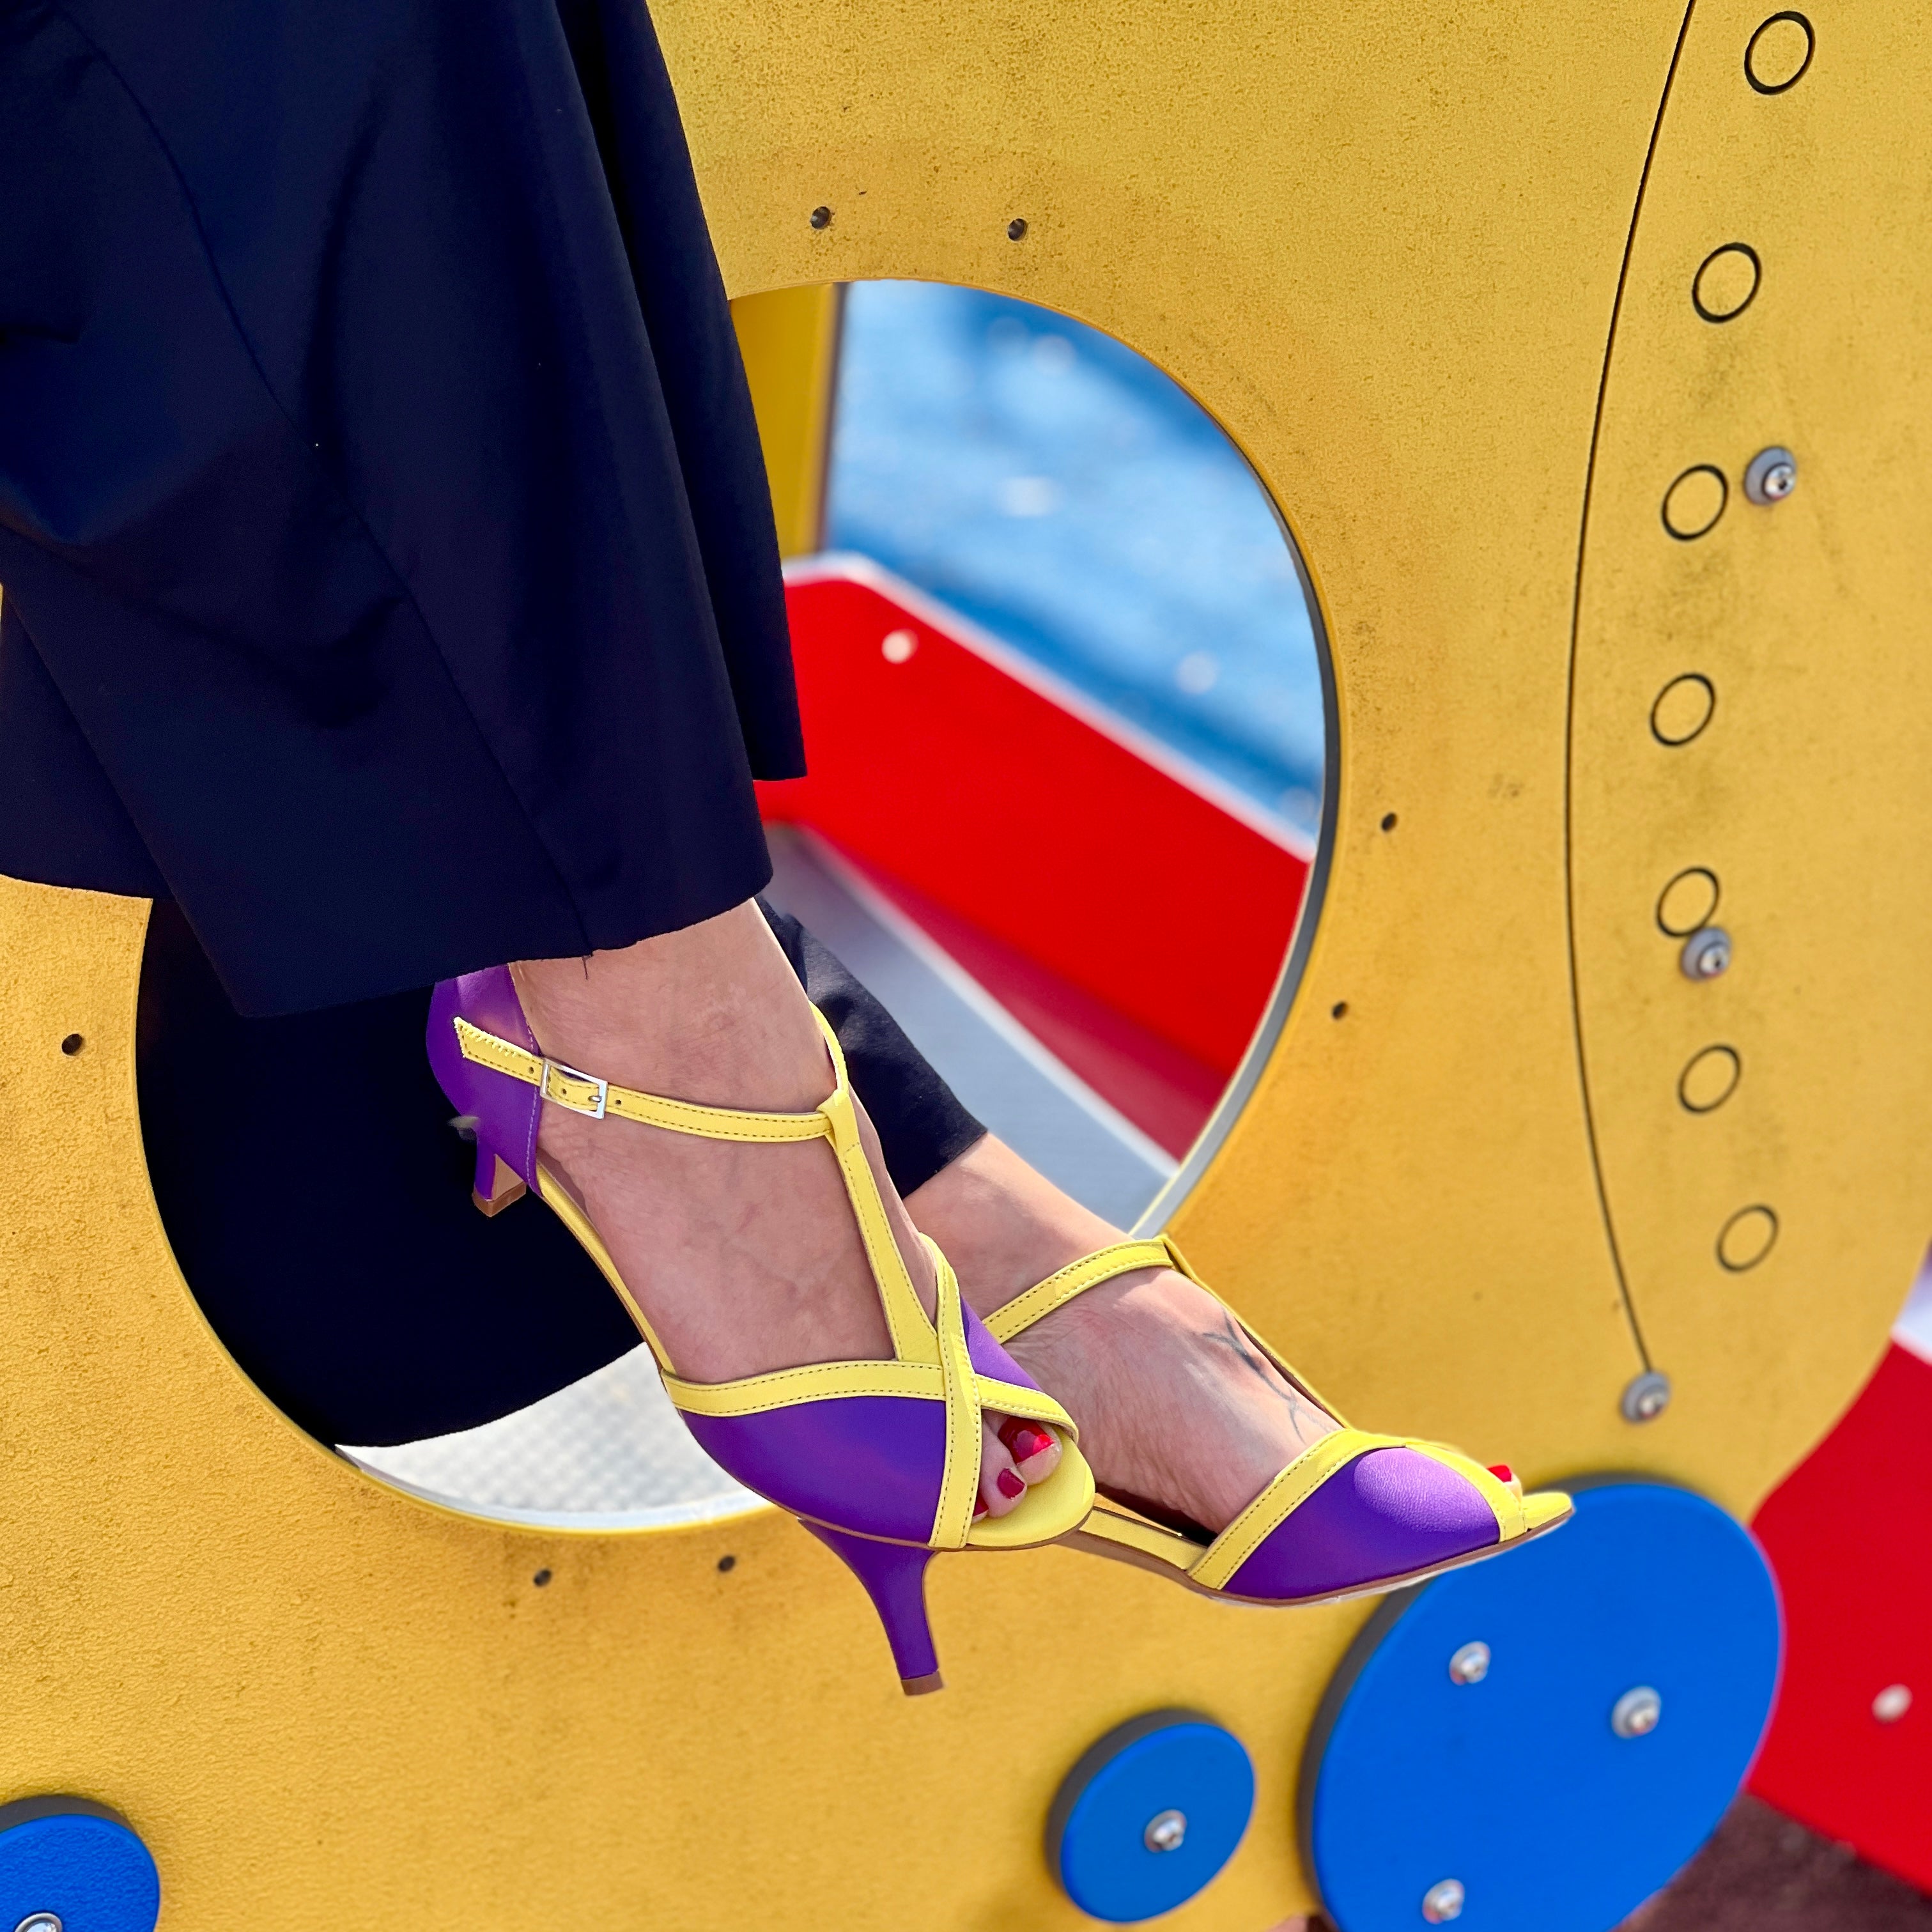 Sonnie Violet sandalo t bar in nappa viola e gialla tacco 6 cm. plateau da 0,5 cm. artigianale